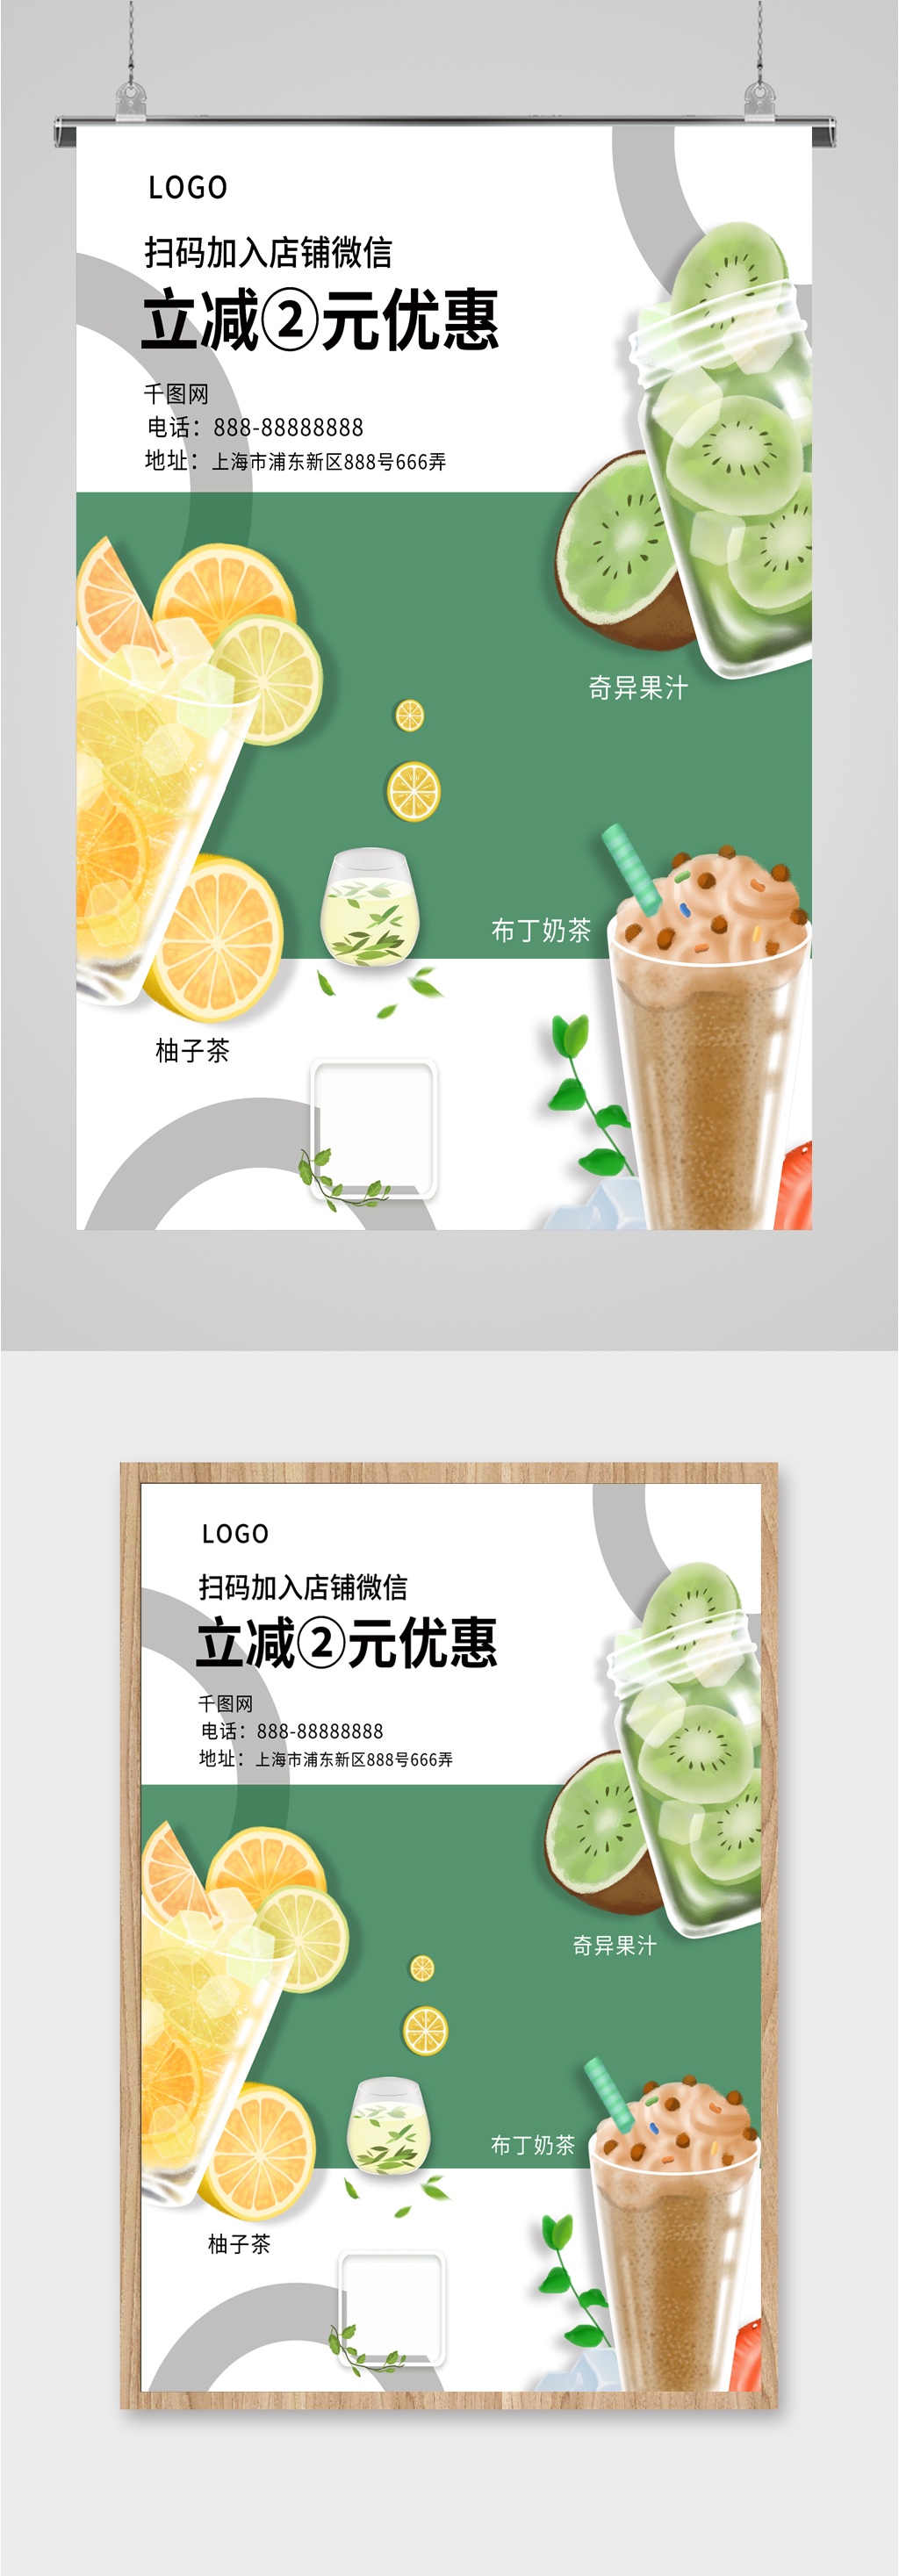 奶茶店促销活动宣传海报